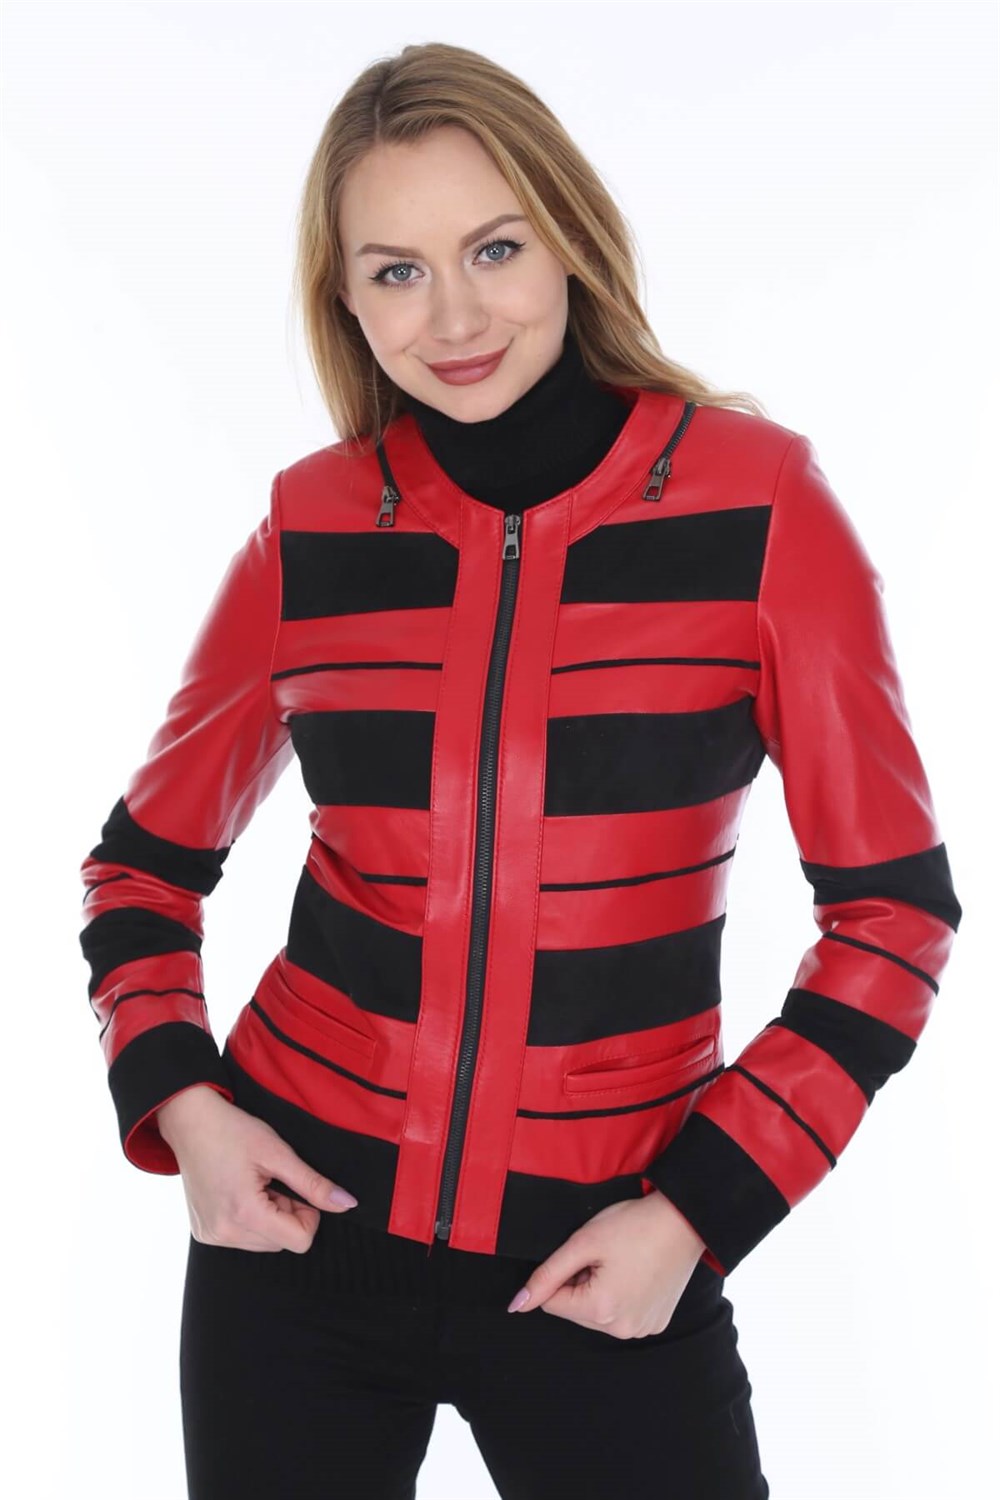 Kadın Deri Mont Kırmızı Siyah Çizgili | Deri Ceket Modelleri - Dericeket .com.tr